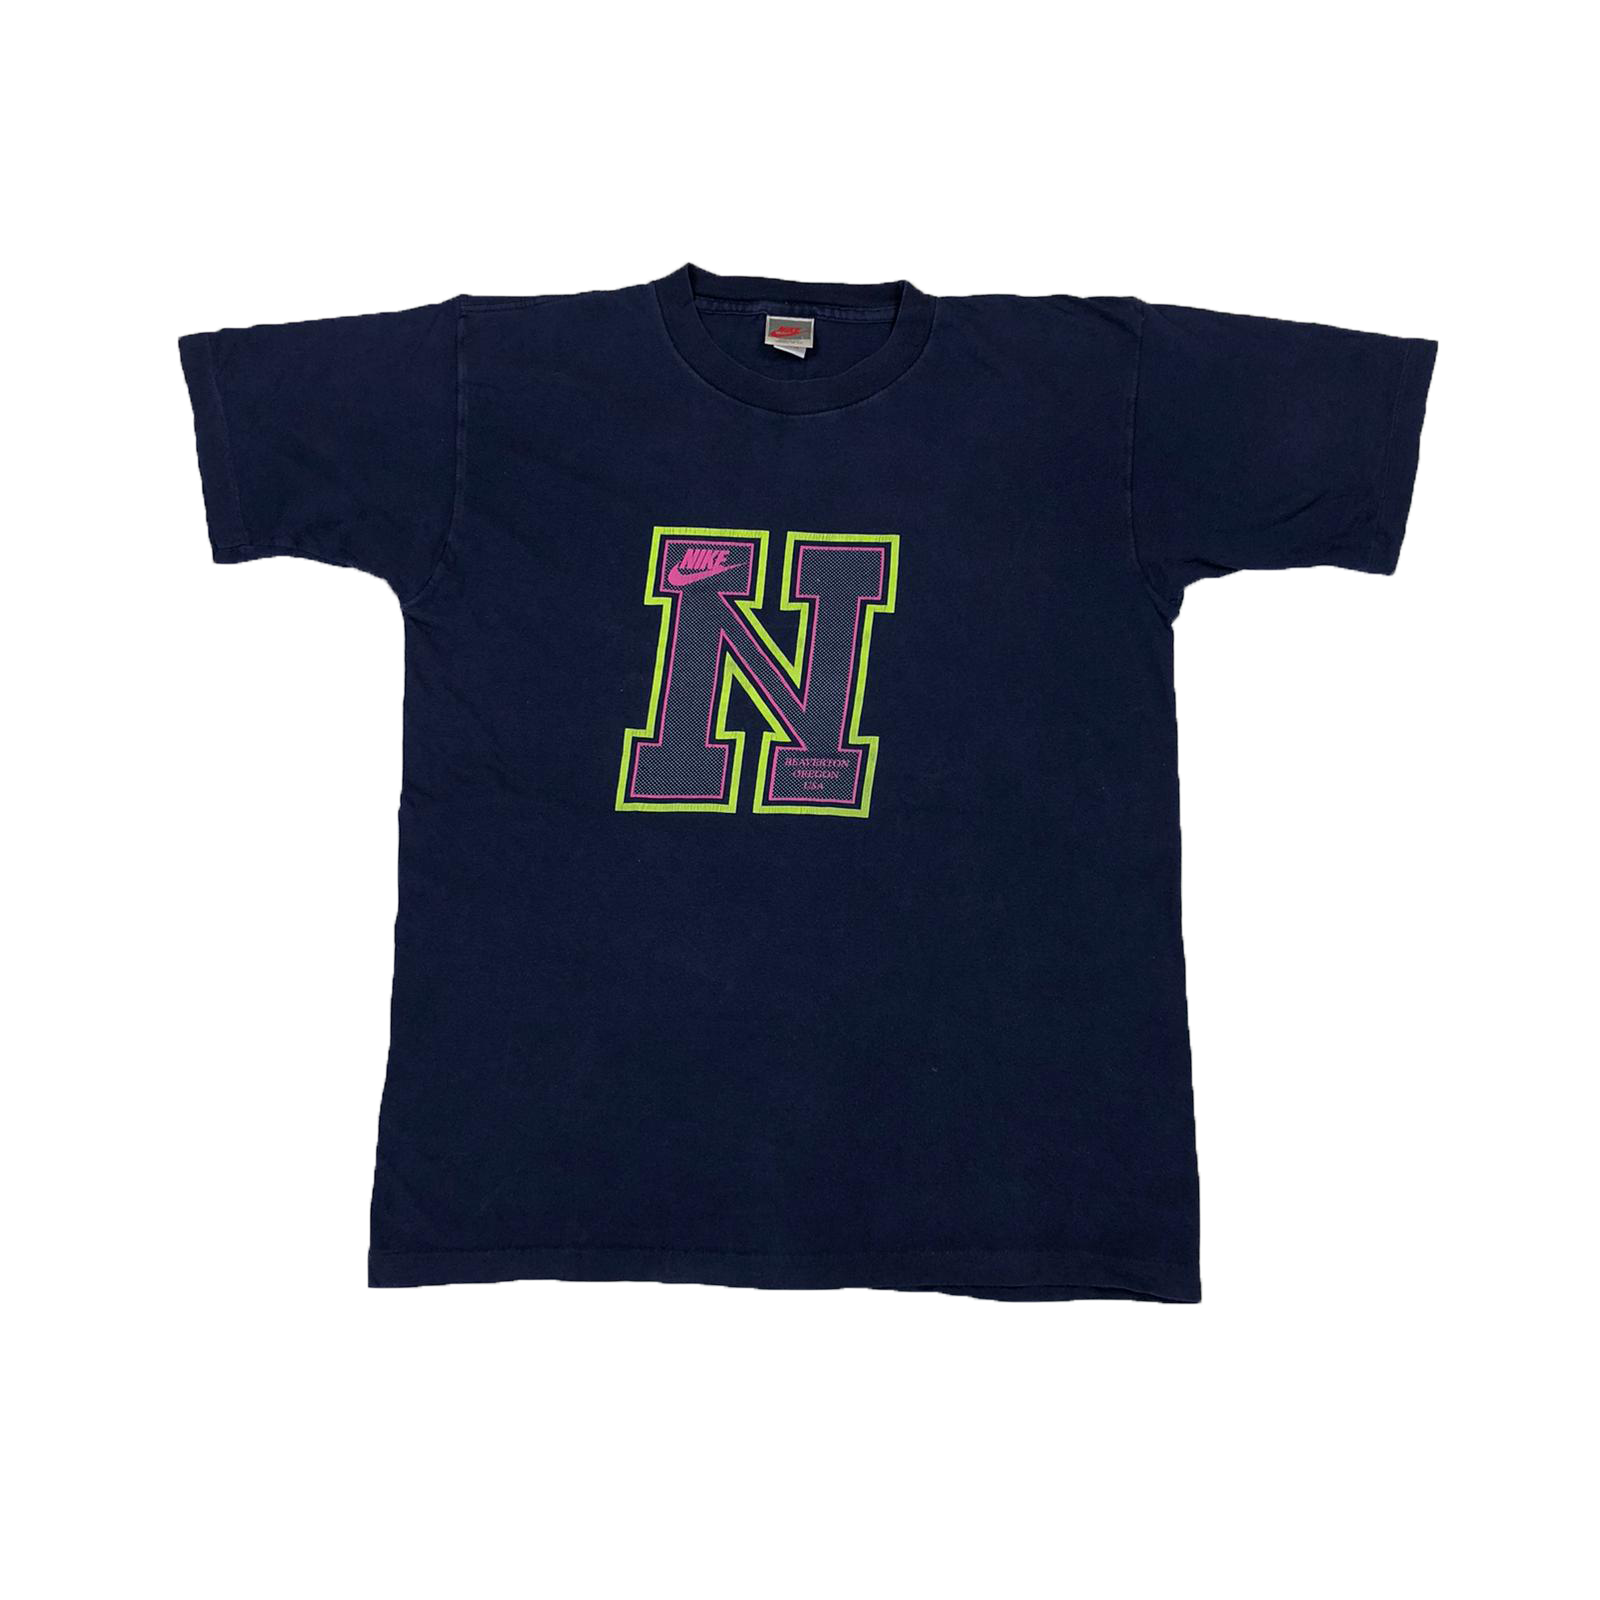 90's Nike t-shirt